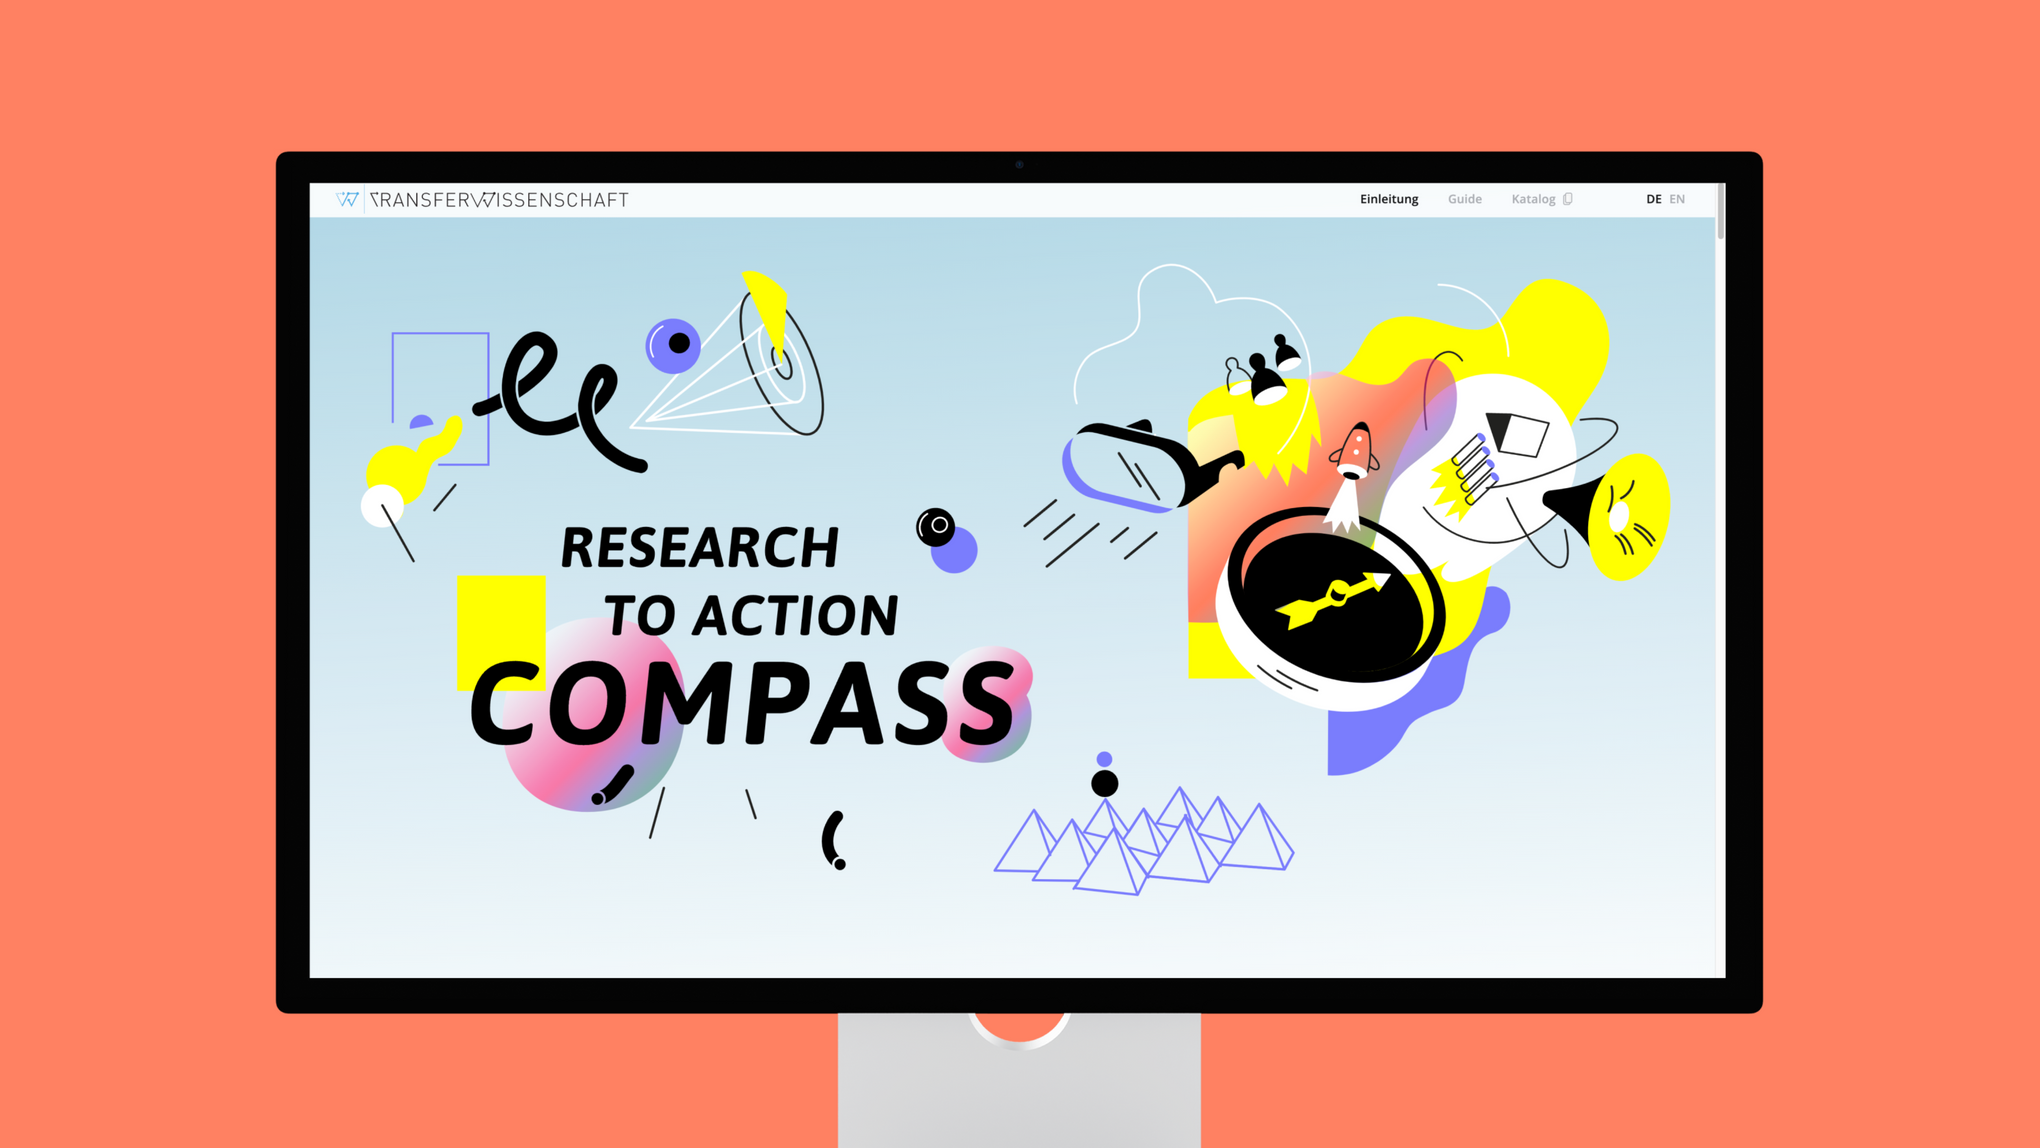 Das Startbildschirm der Befragungs-Webseite "Research to Action Compass"